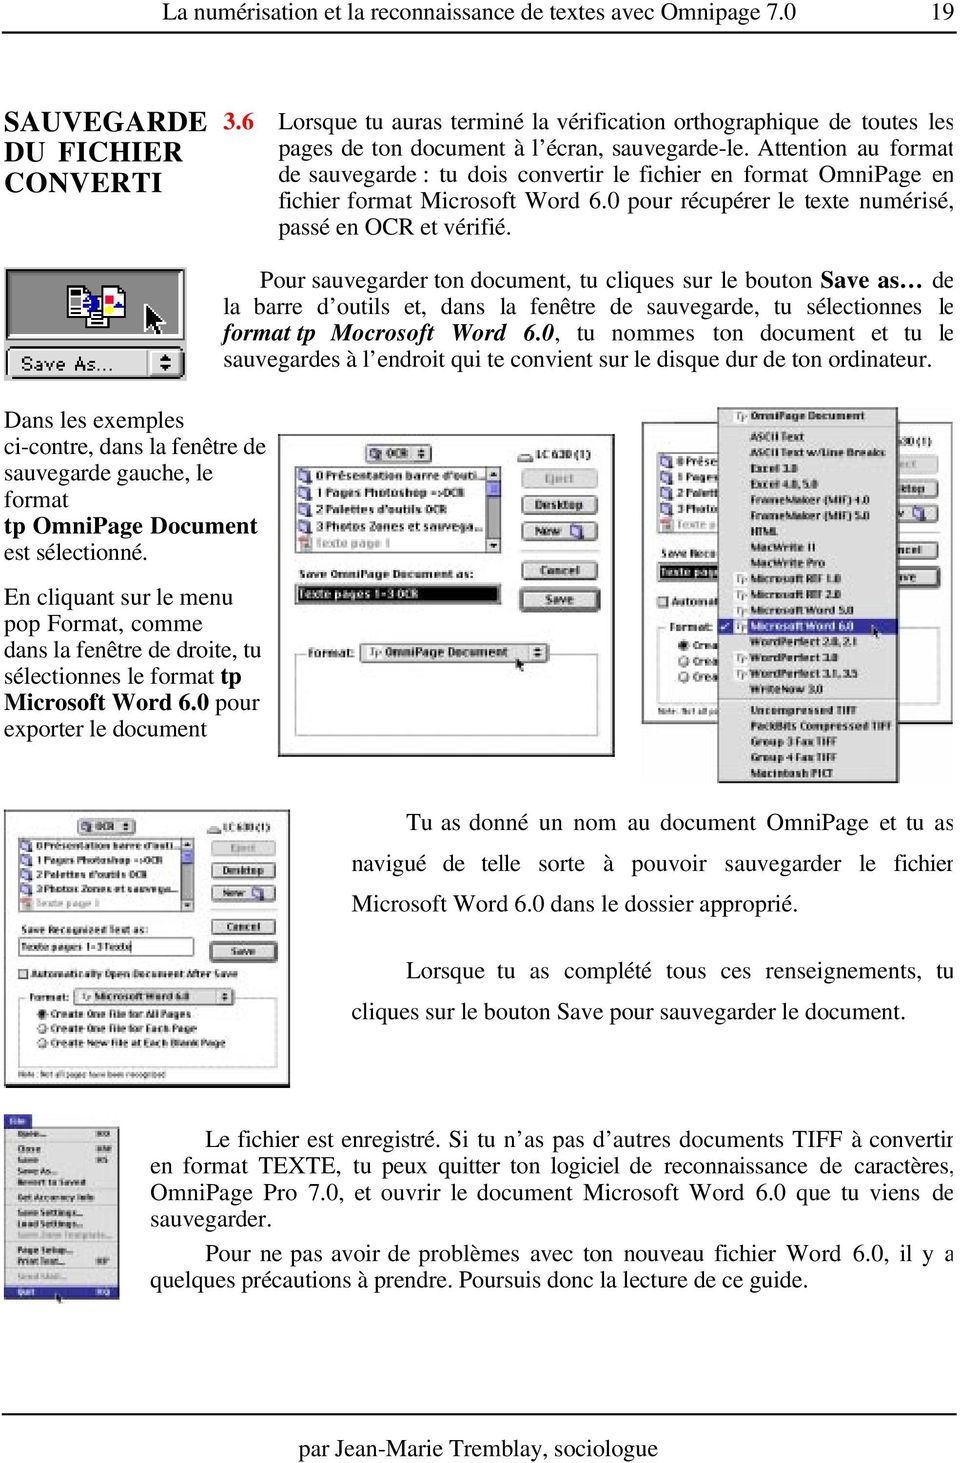 Attention au format de sauvegarde : tu dois convertir le fichier en format OmniPage en fichier format Microsoft Word 6.0 pour récupérer le texte numérisé, passé en OCR et vérifié.